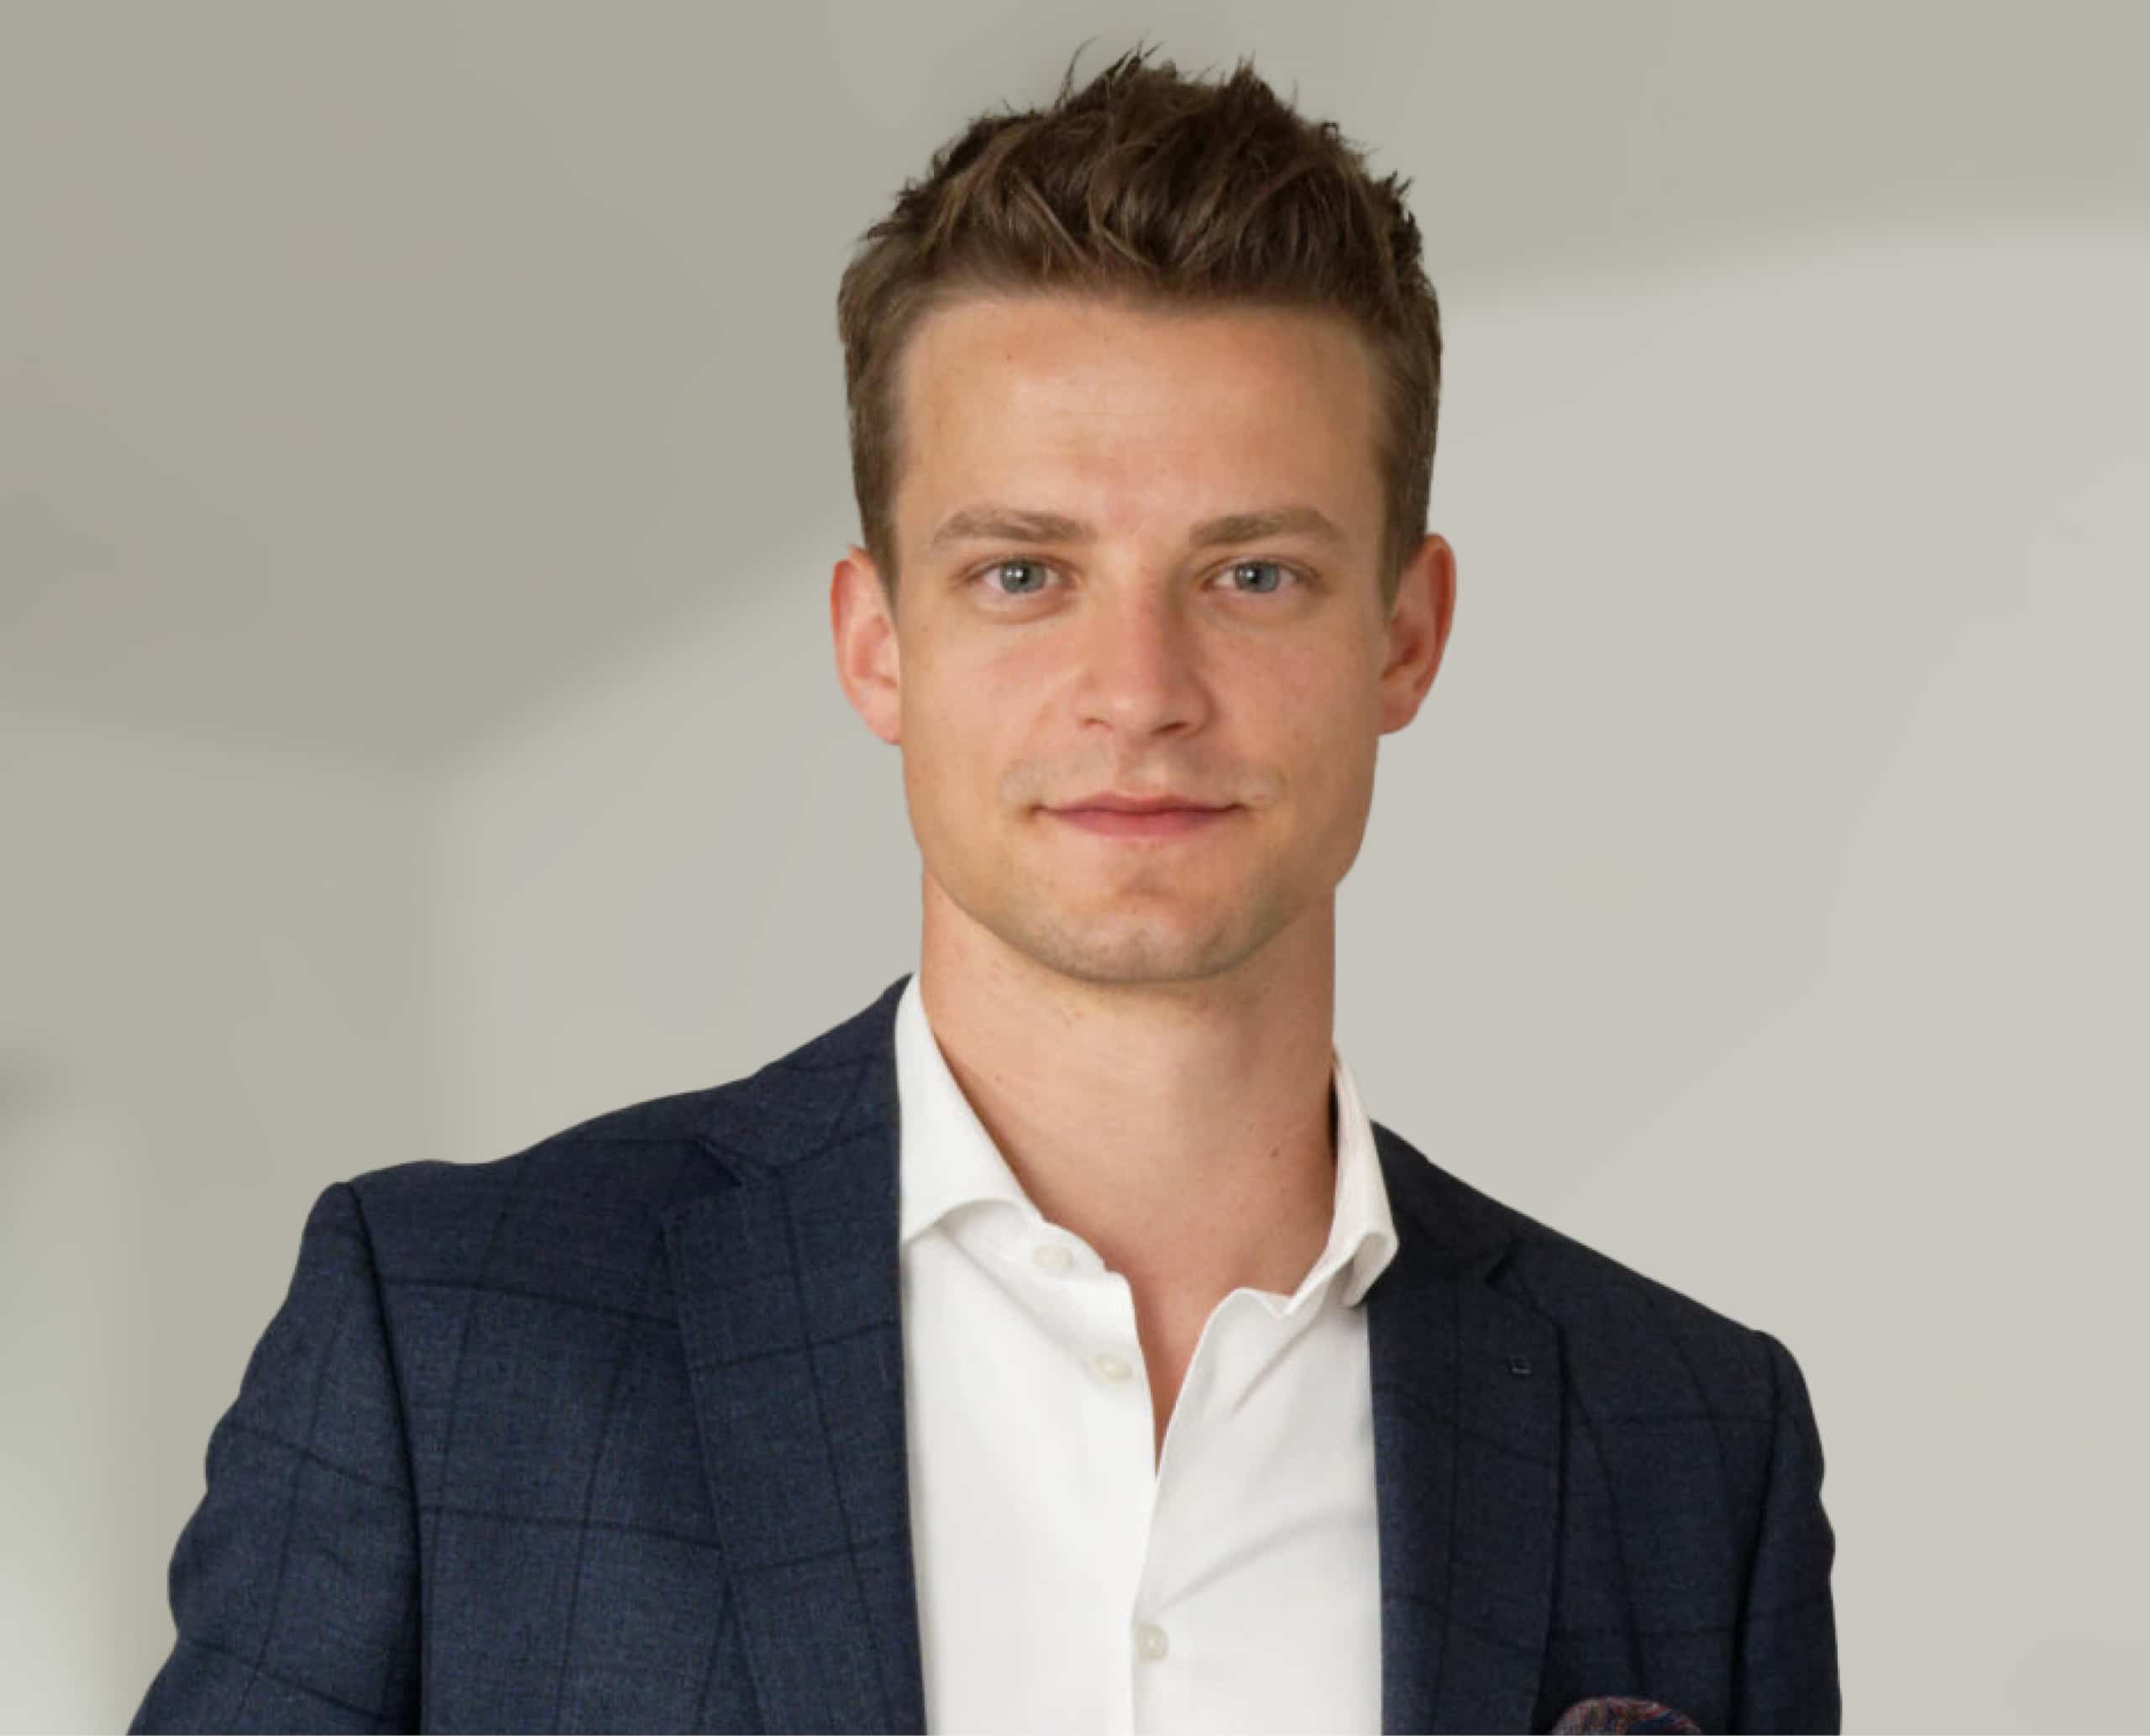 Tjark Klindworth, Managing Director of QUIDT GmbH